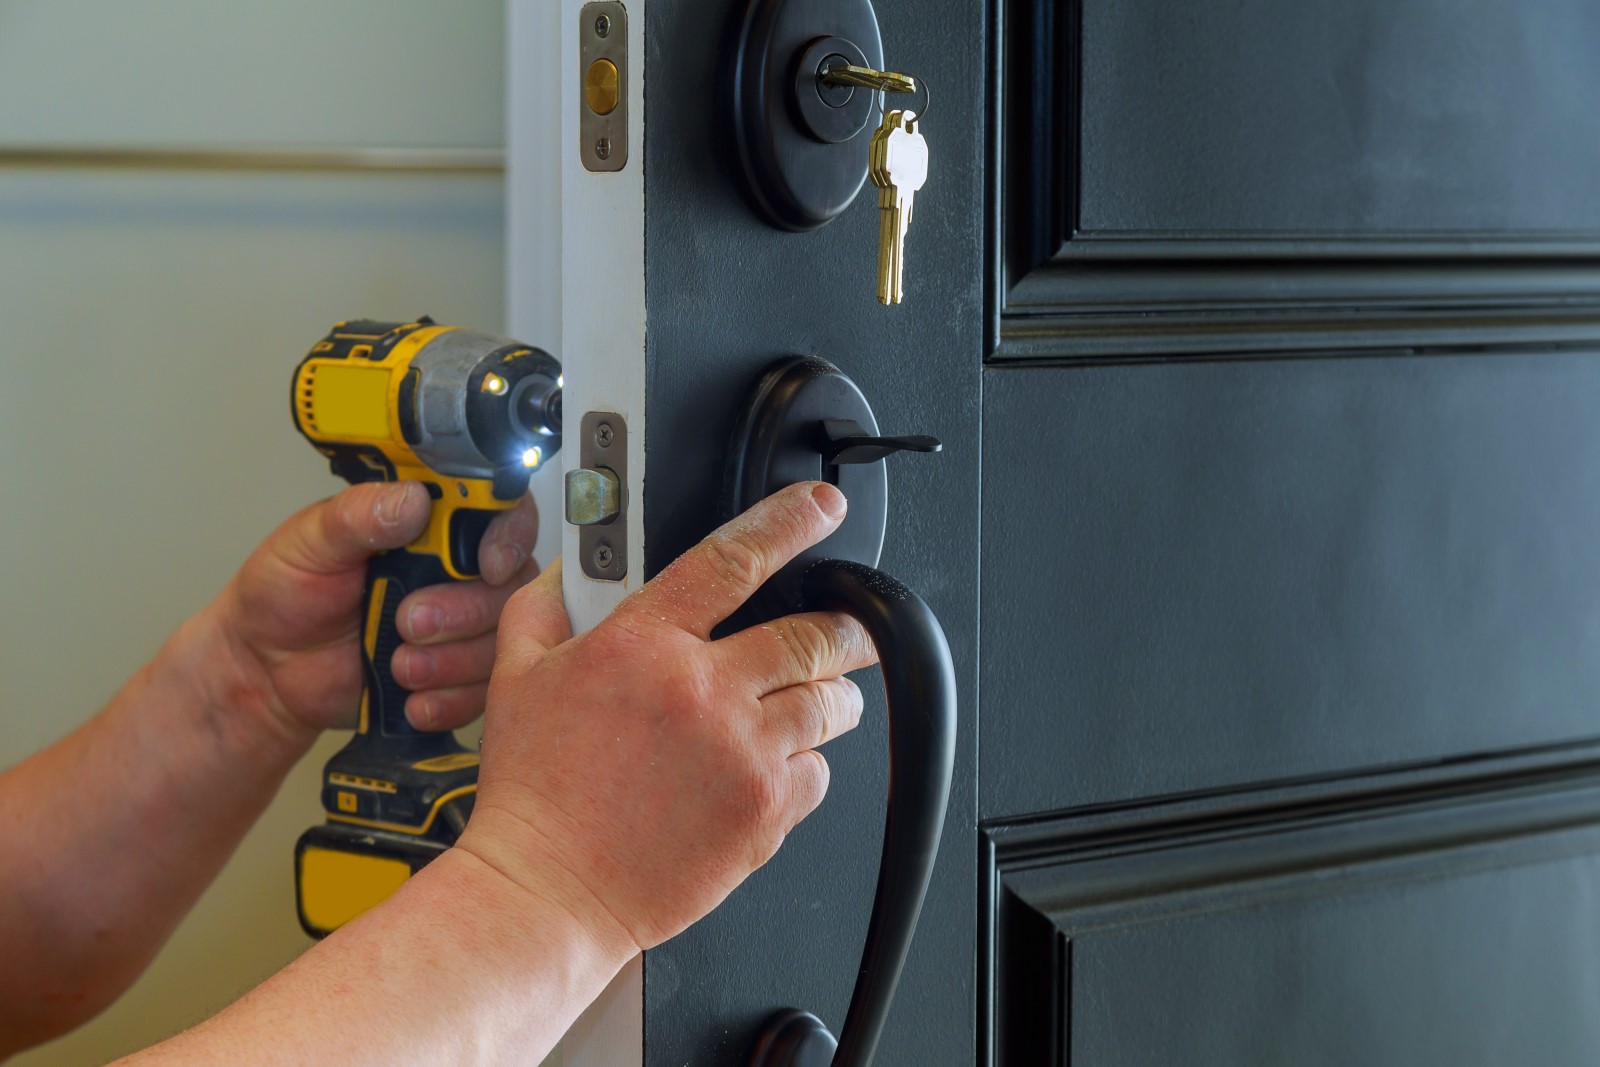 Residential locksmith installing a deadbolt lock.